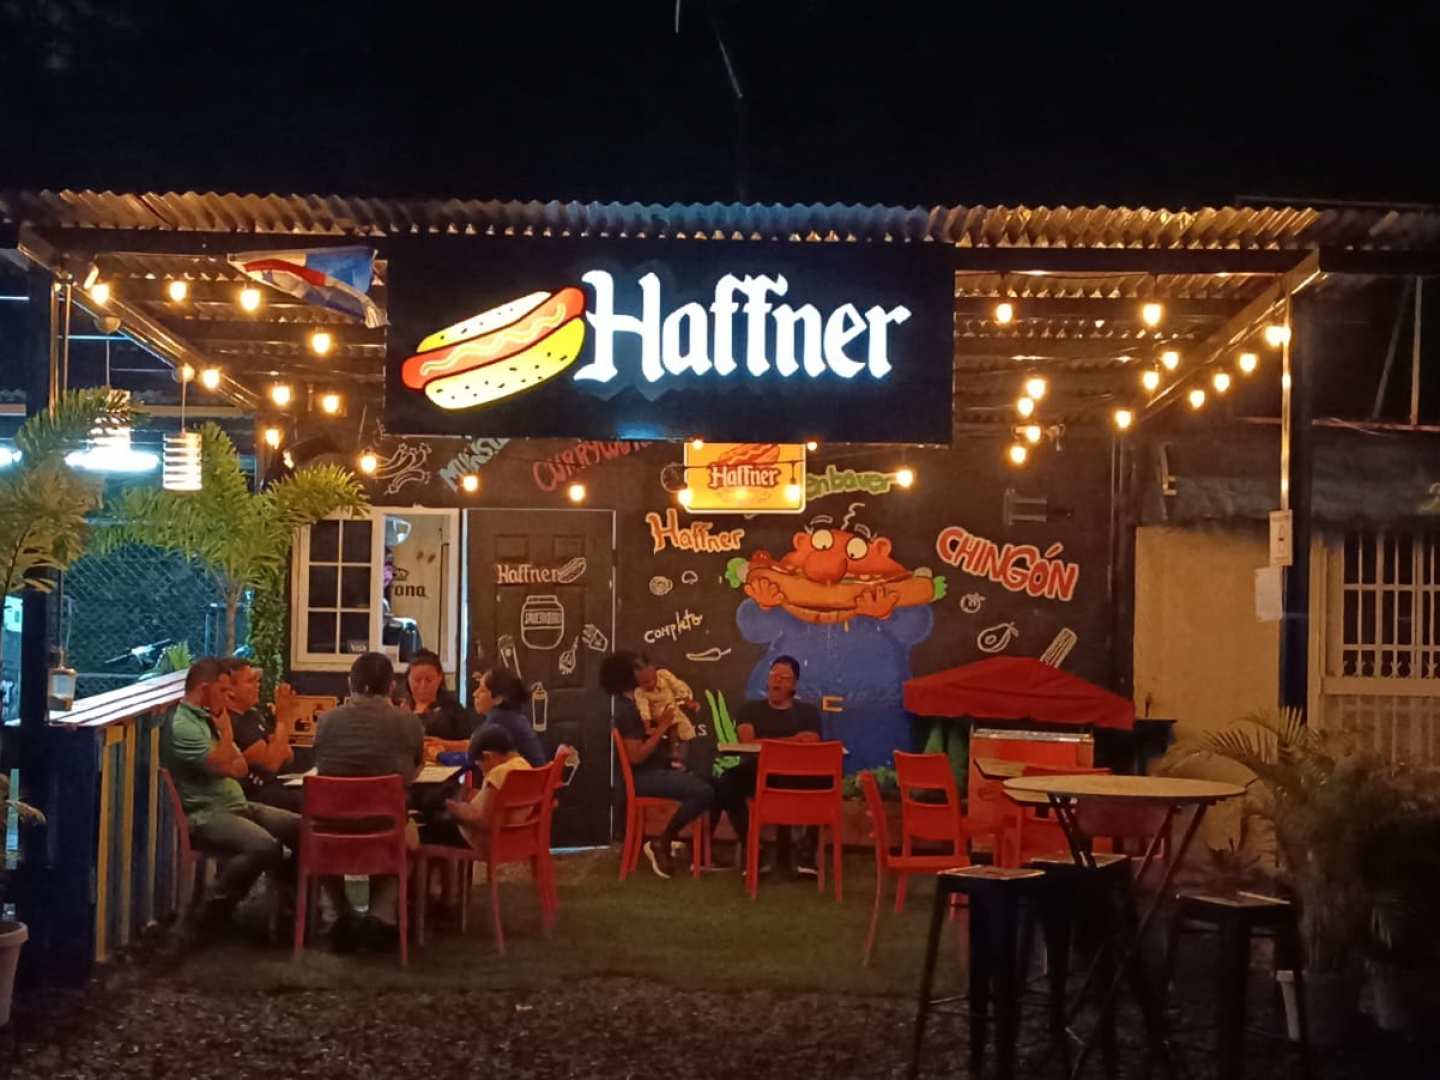 Haffner Hot Dogs (Marbella)